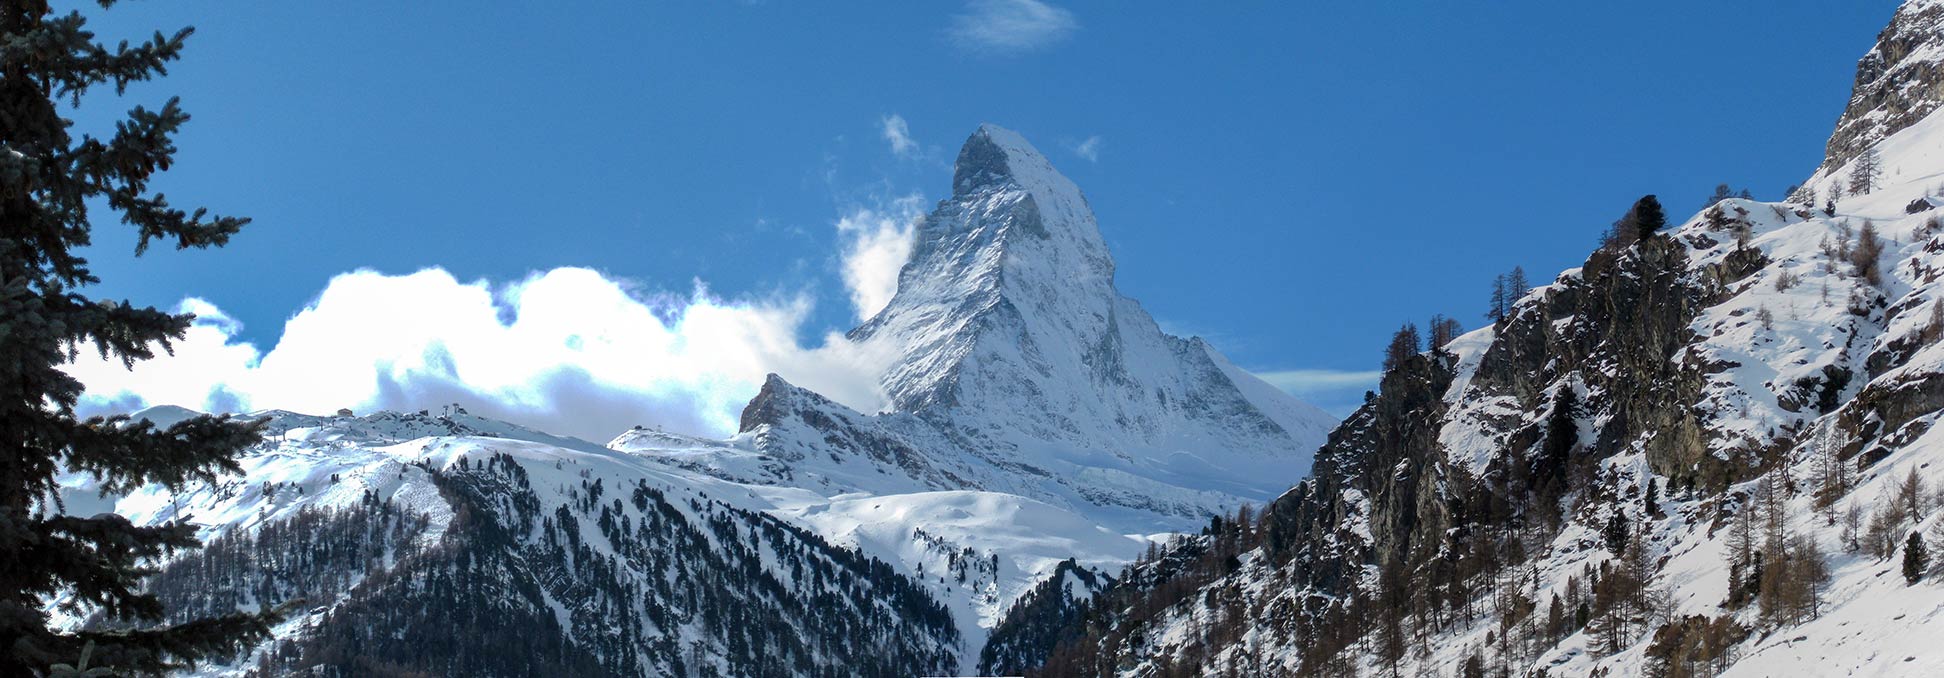 Peak of the Matterhorn mountain in Swtzerland